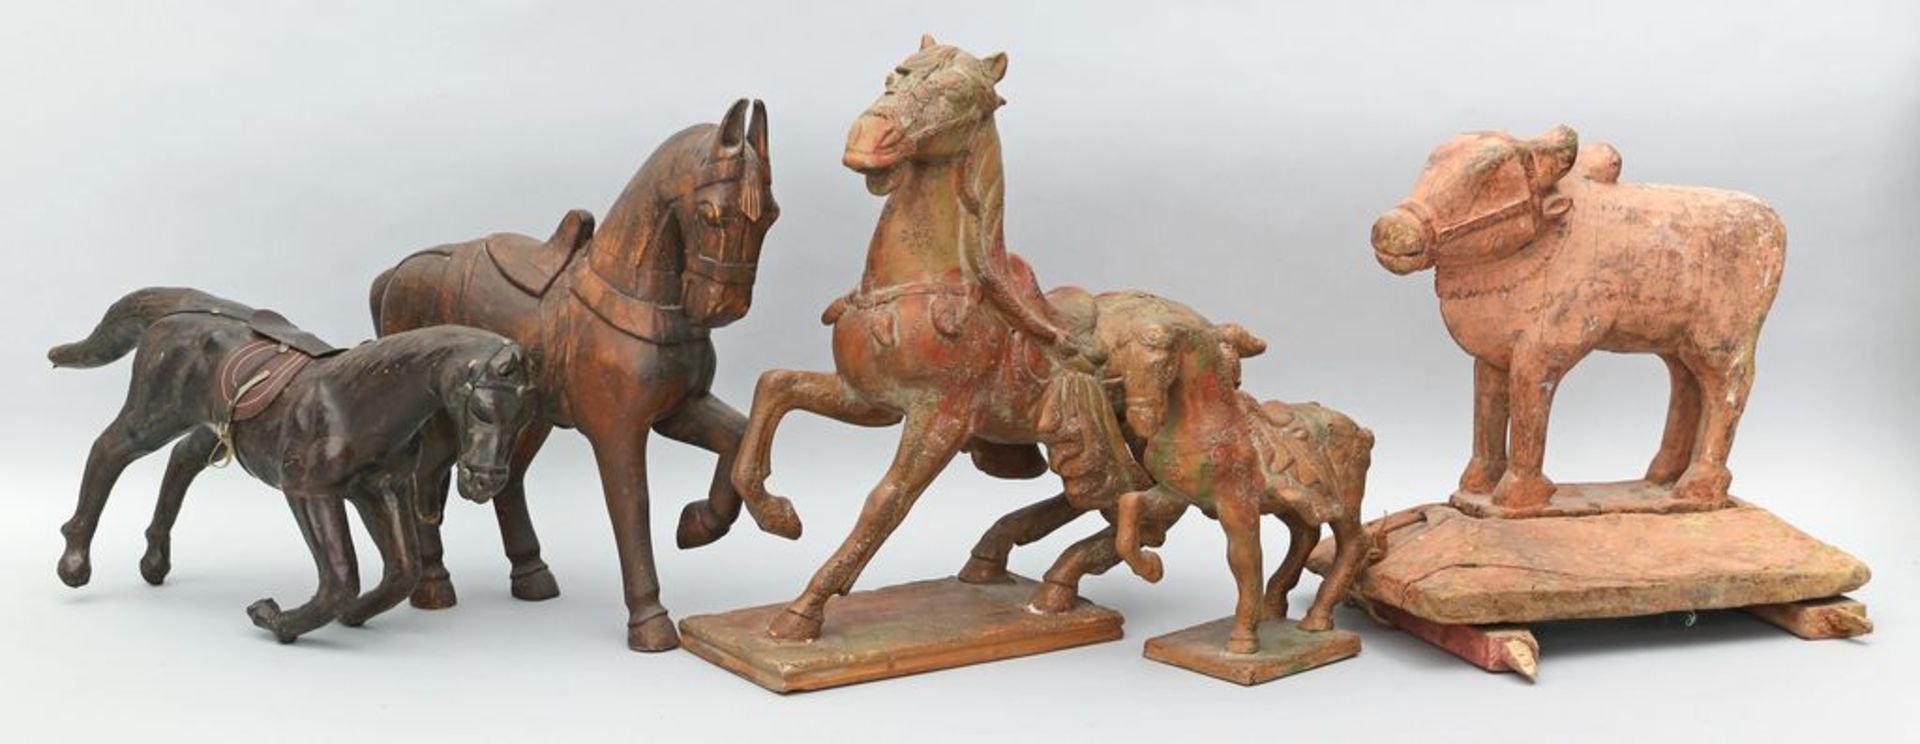 Sammlung von 11 Pferde- und 1 Wasserbüffelskulptur. Verschiedene Ausführungen, teils im Tang-Stil. - Image 2 of 2